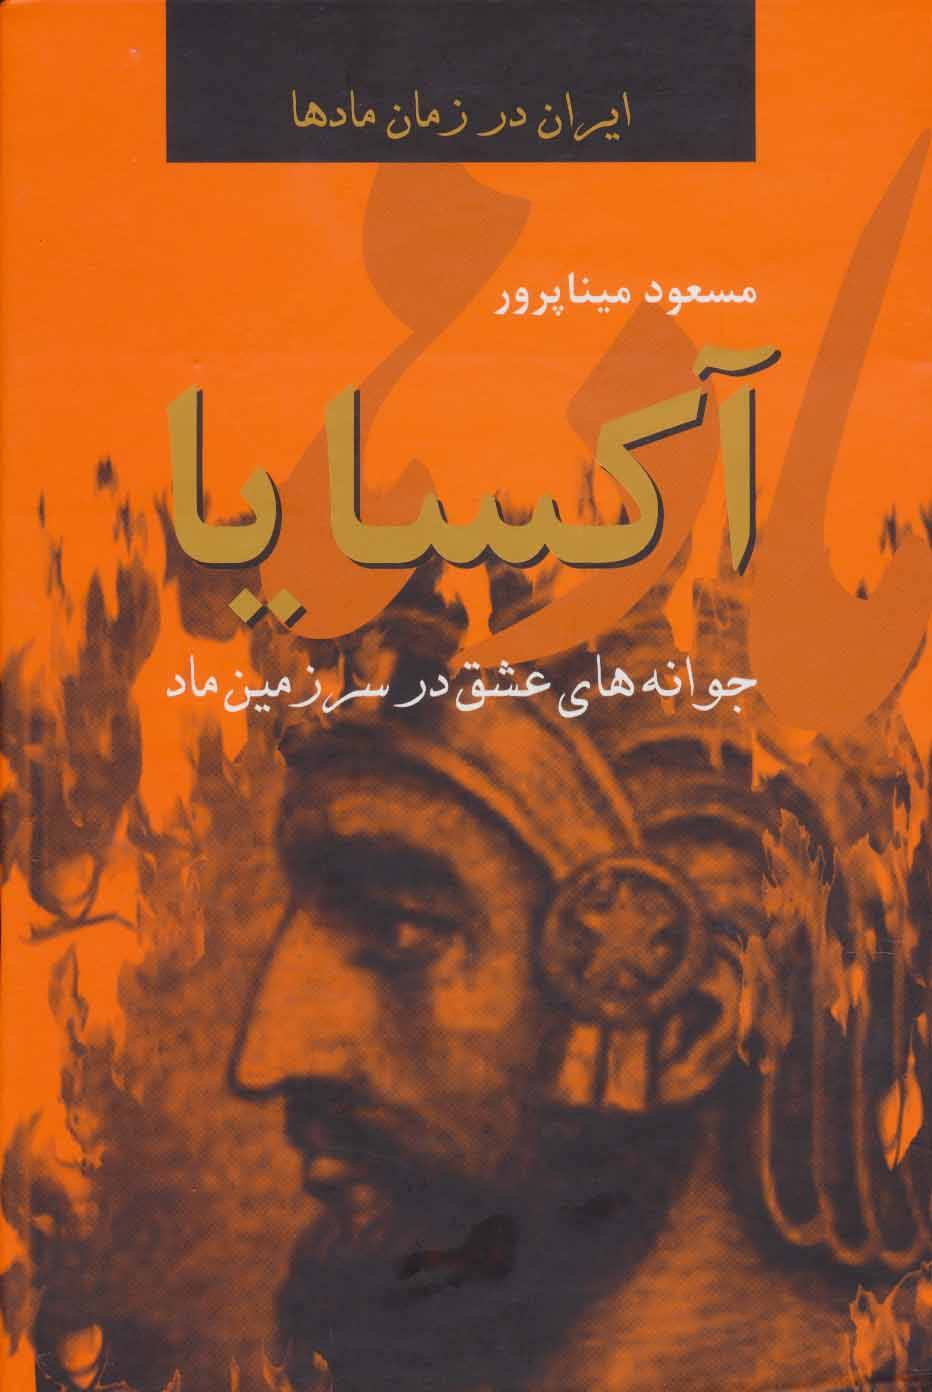 کتاب ایران در زمان مادها (آکسایا:جوانه های عشق در سرزمین ماد)